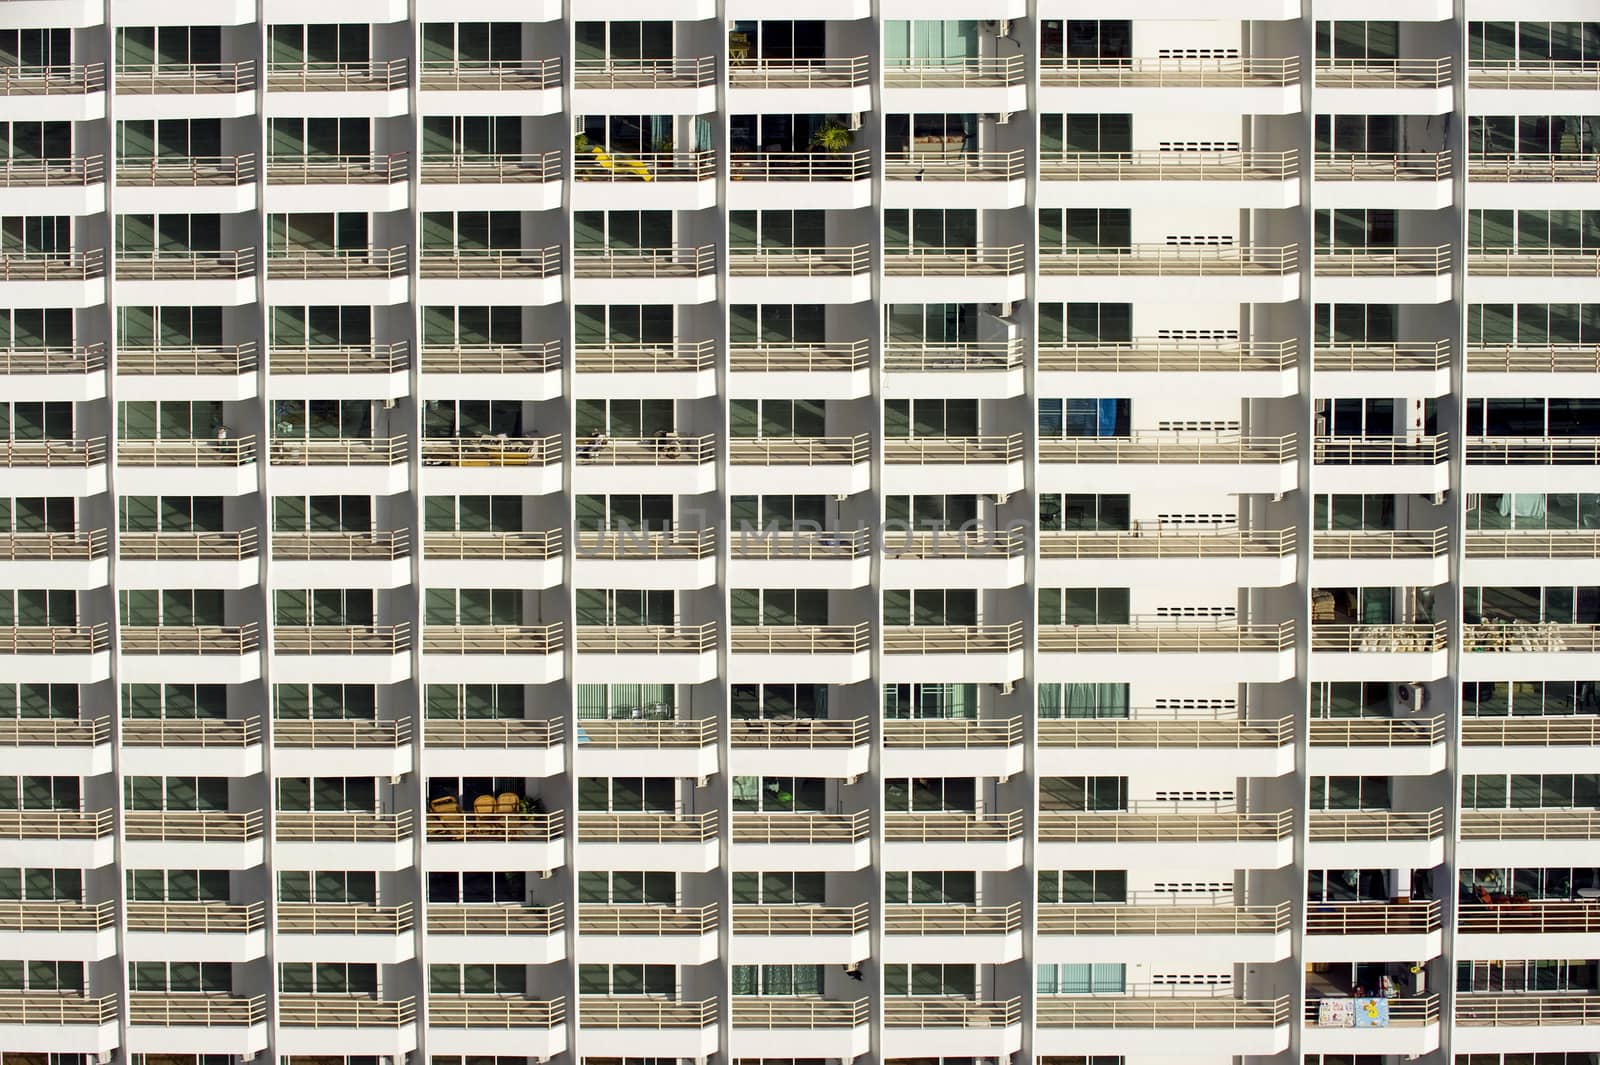 condominium - pattern / background